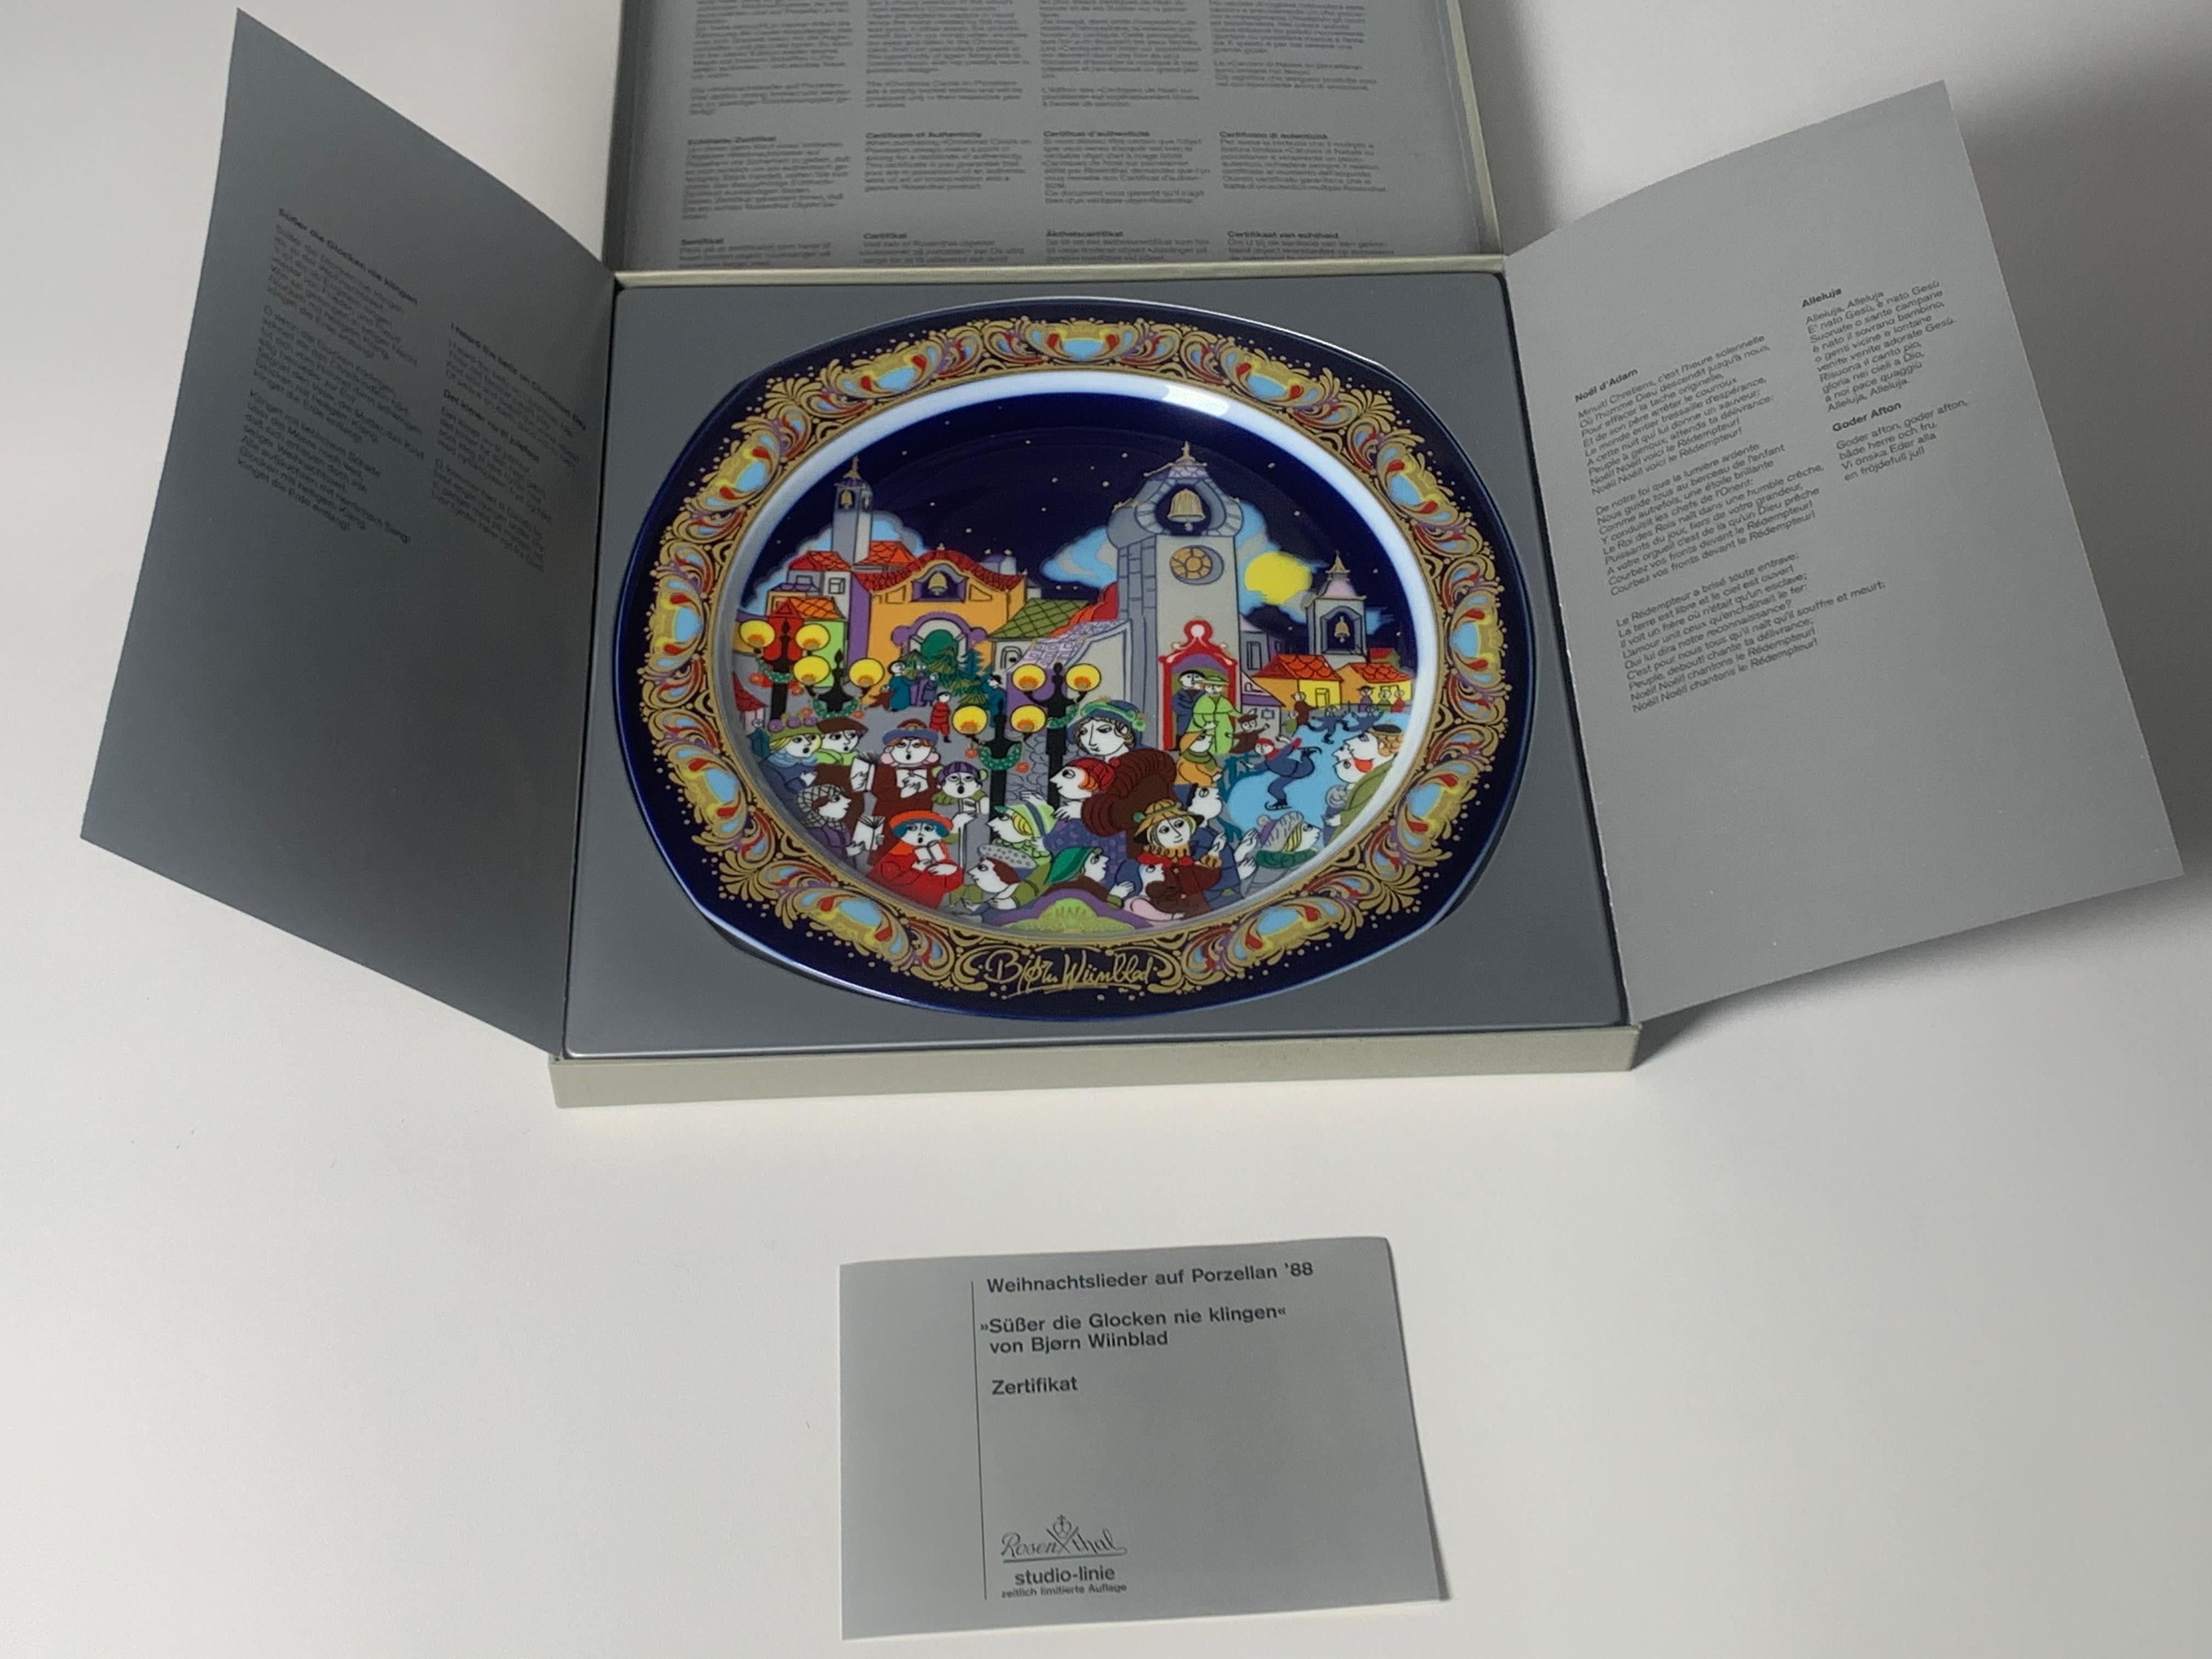 Assiette de Noël en porcelaine de 1988 de Bjorn Wiinblad réalisée par le fabricant allemand Rosenthal. Le plat s'intitule 